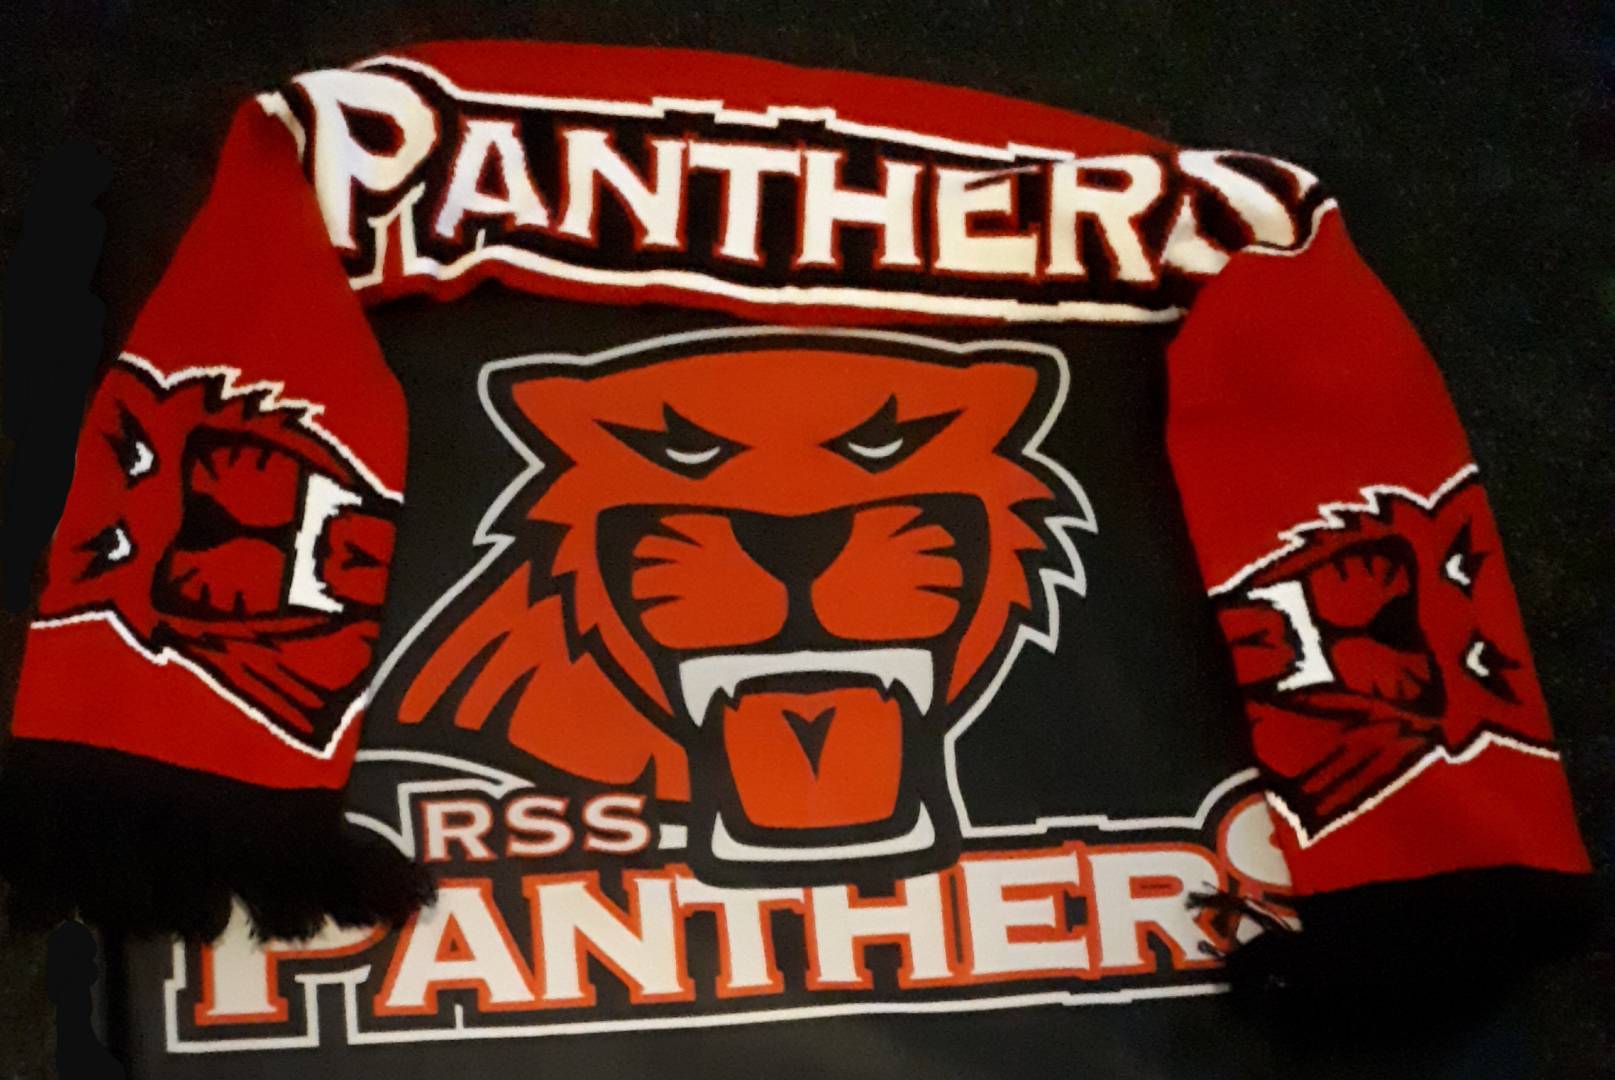 RSS Panthers P05 käynnistelee tulevaa kautta ja hakee myös uusia pelaajia